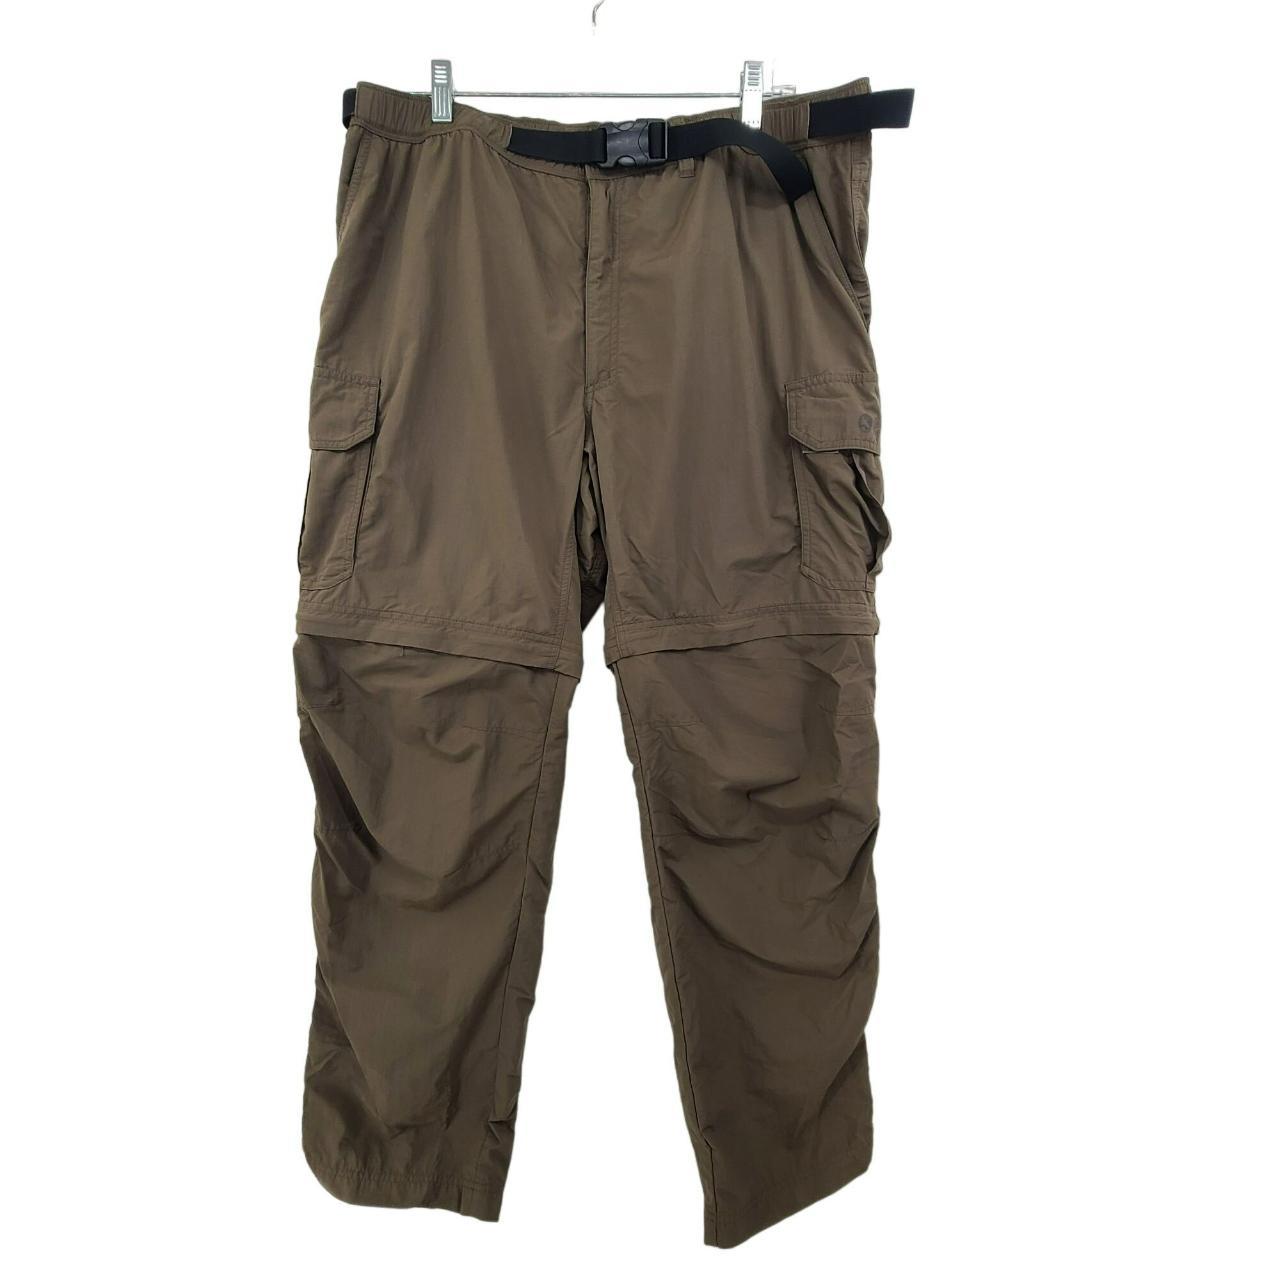 Gander Mountain Men's Utility Pants Olive Size... - Depop